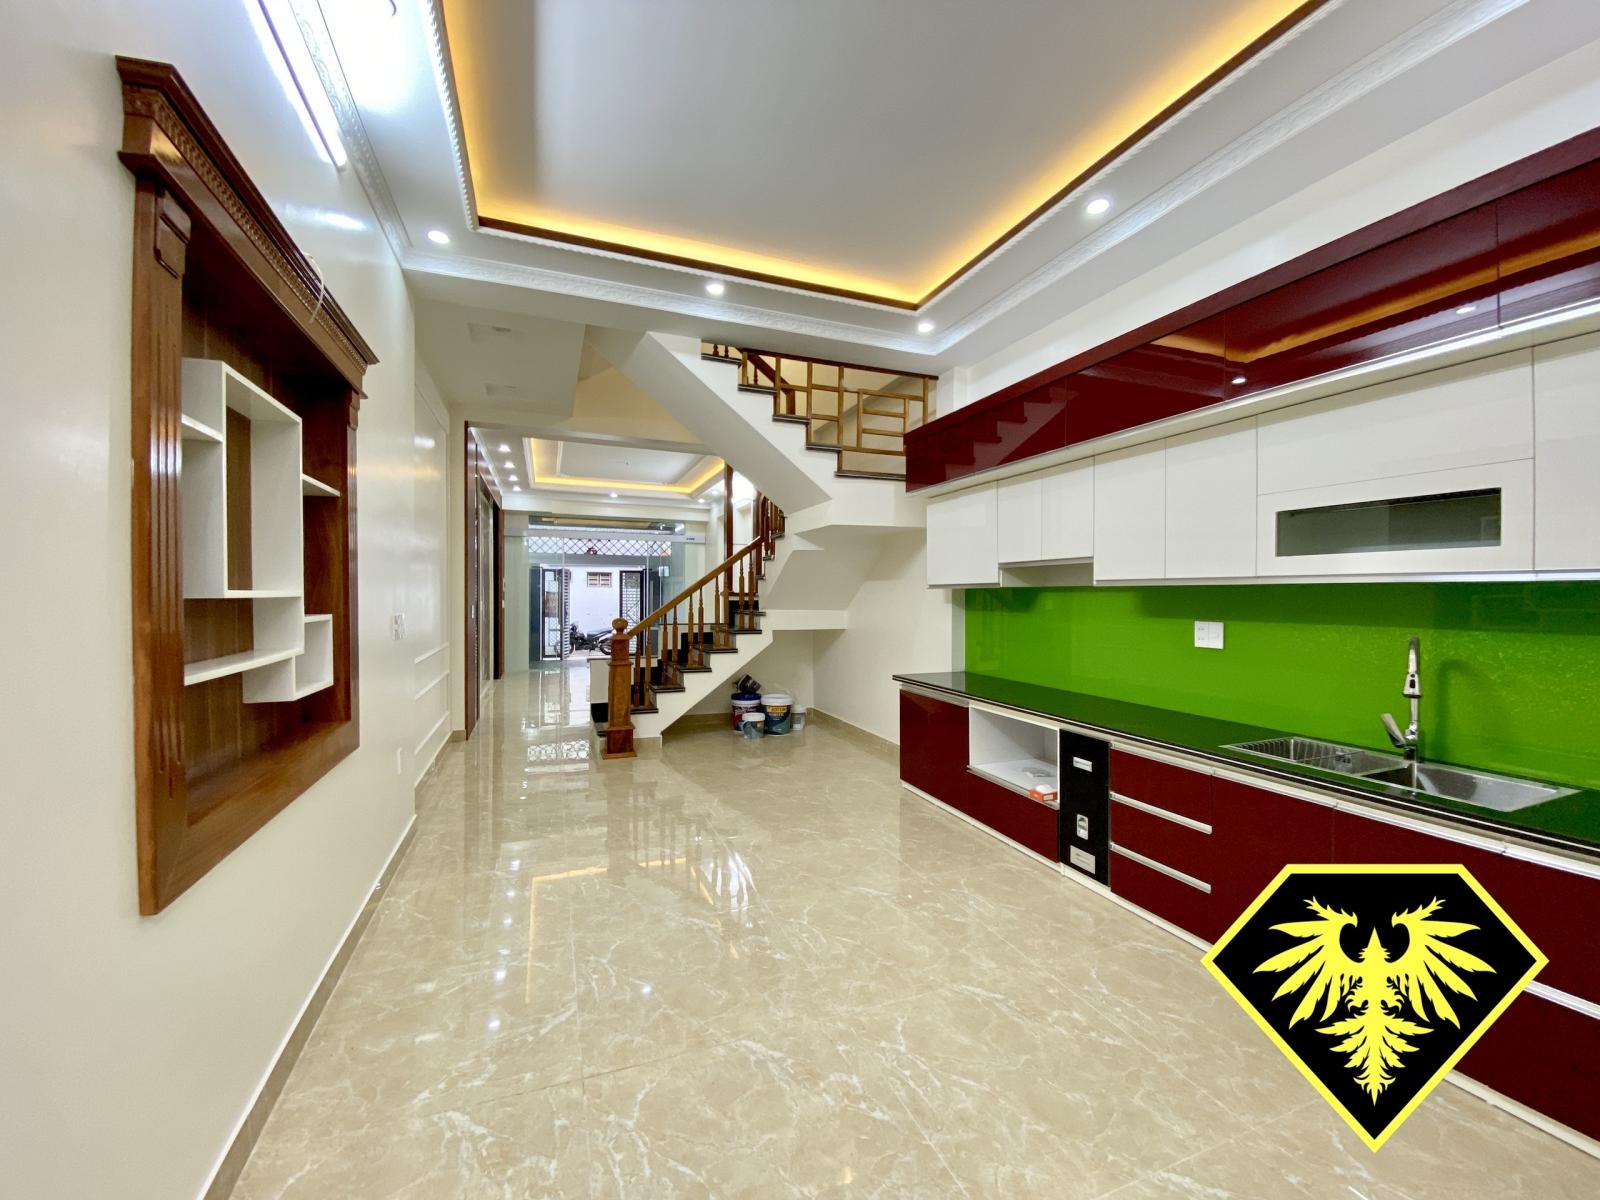 ♦️⭐️♦️ Bán nhà 4 tầng đẹp kinh doanh được :
⭐️ Phạm Hữu Điều - Niệm Nghĩa - Lê Chân - Hải Phòng 318078